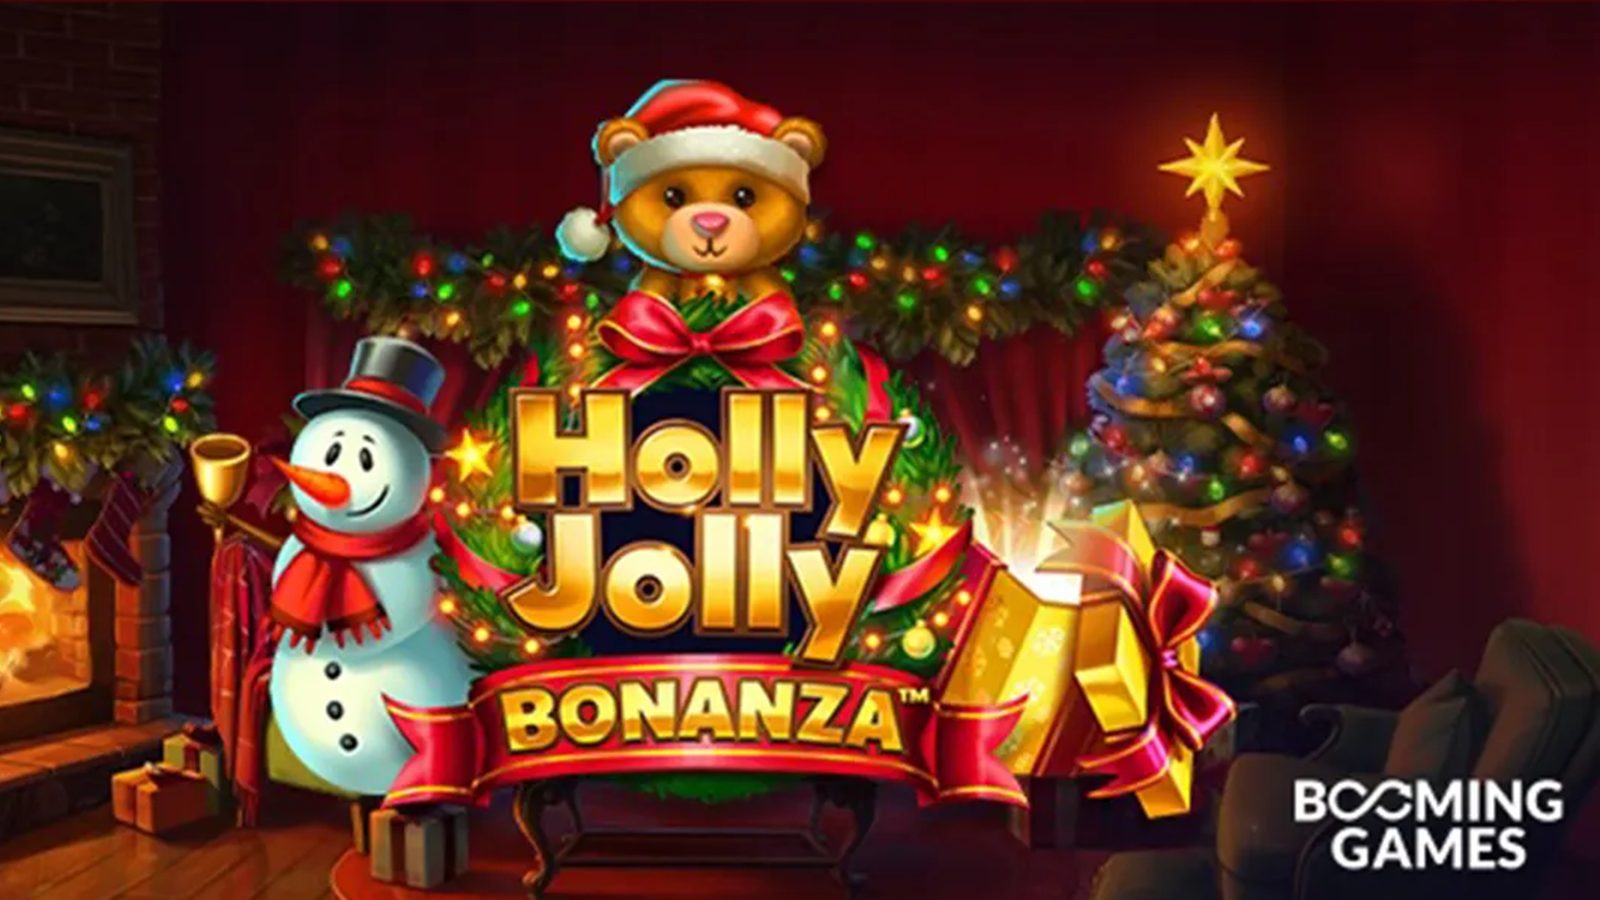 Booming Games - Holly Jolly Bonanza